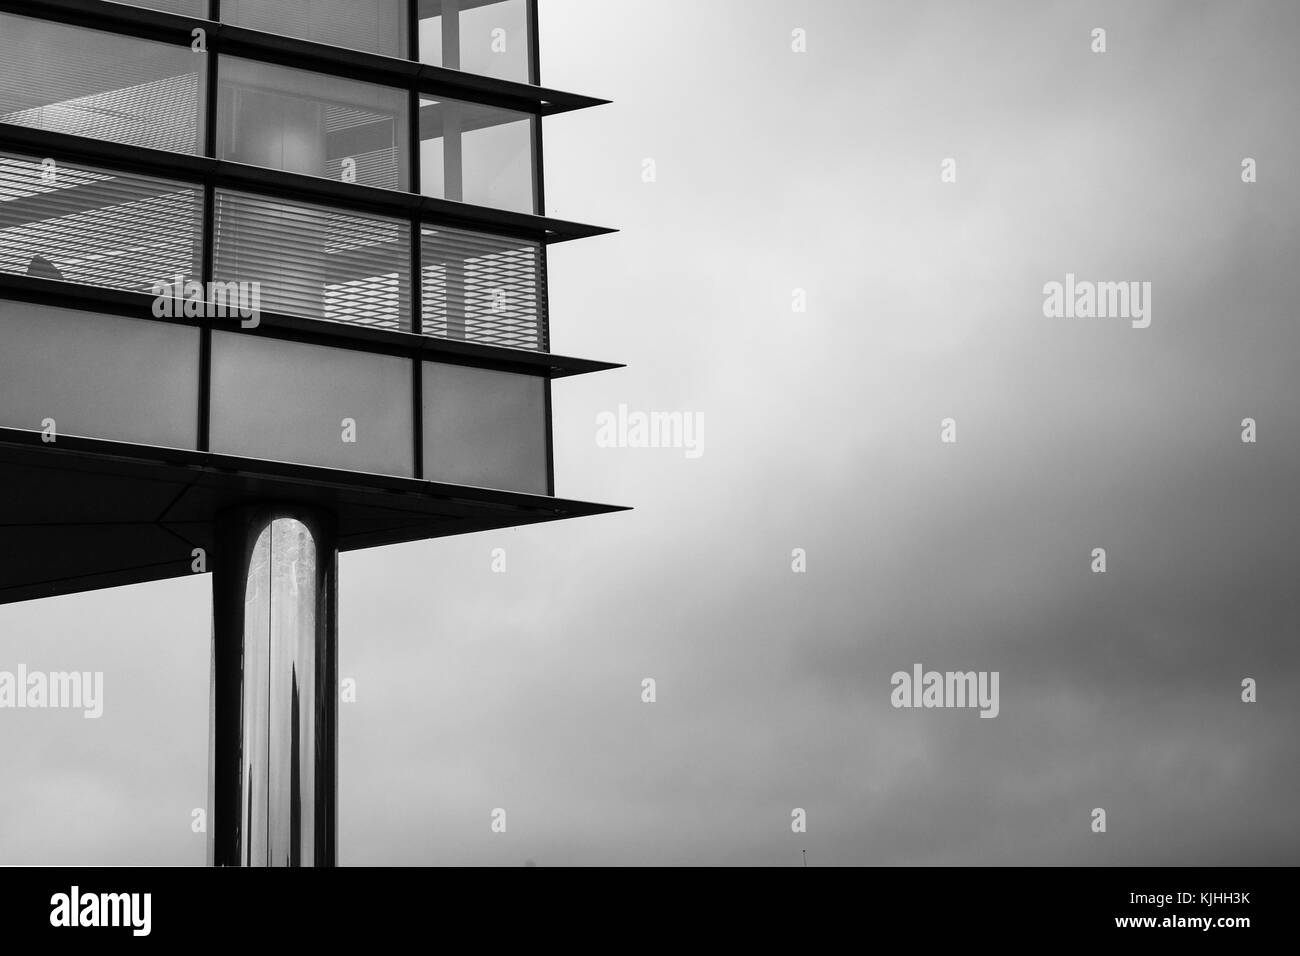 Architektonische Fotografien in Schwarz-Weiß bei der Princes Exchange Gebäude genommen, Prince's Square, Leeds, Großbritannien Stockfoto